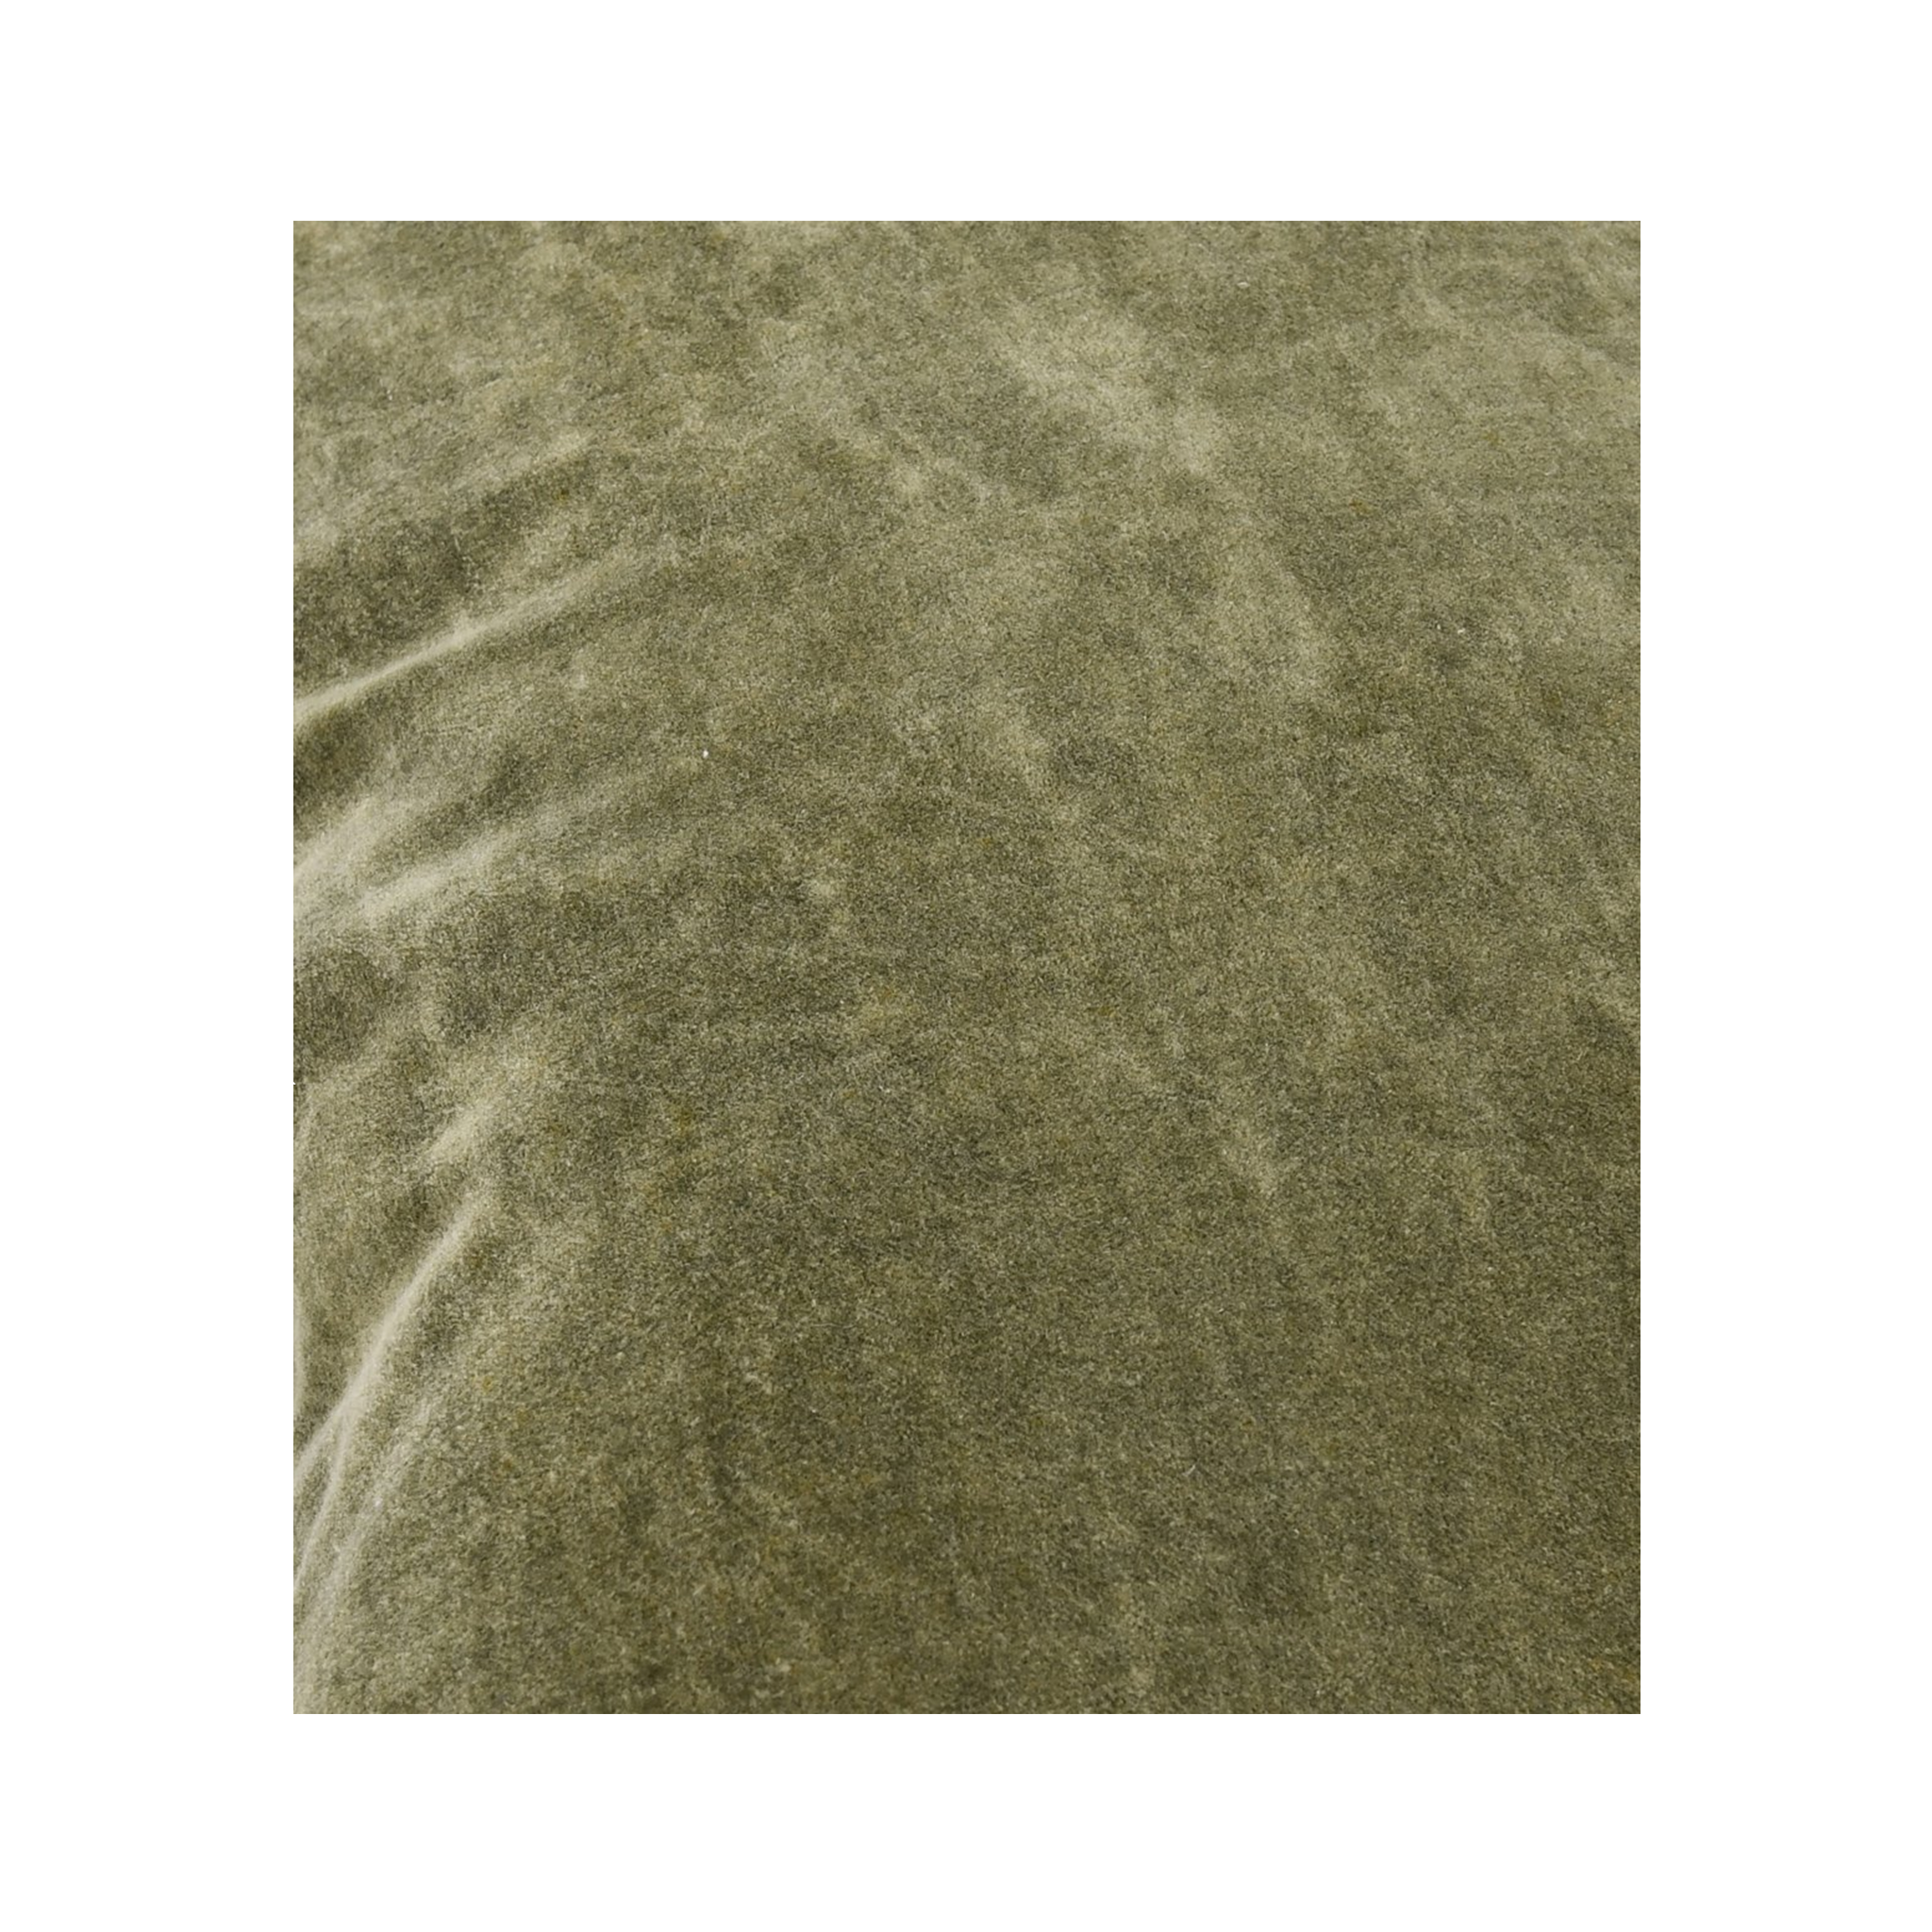 Heirloom Velvet Pillow (Moss)